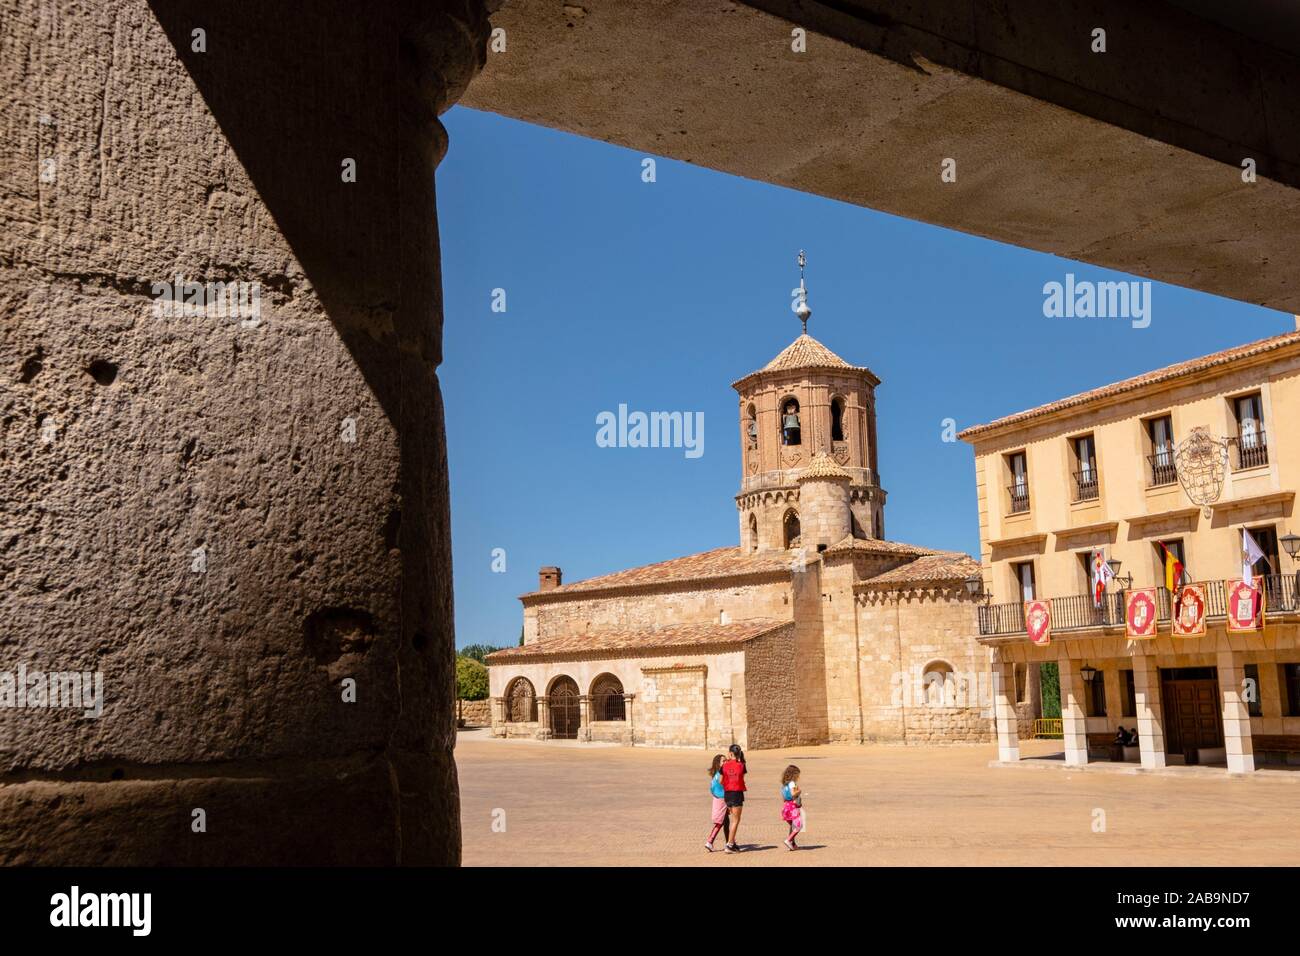 Iglesia de San Miguel y ayuntamiento, Almazán, Soria, comunidad autónoma de Castilla y León, Spain, Europe. Stock Photo